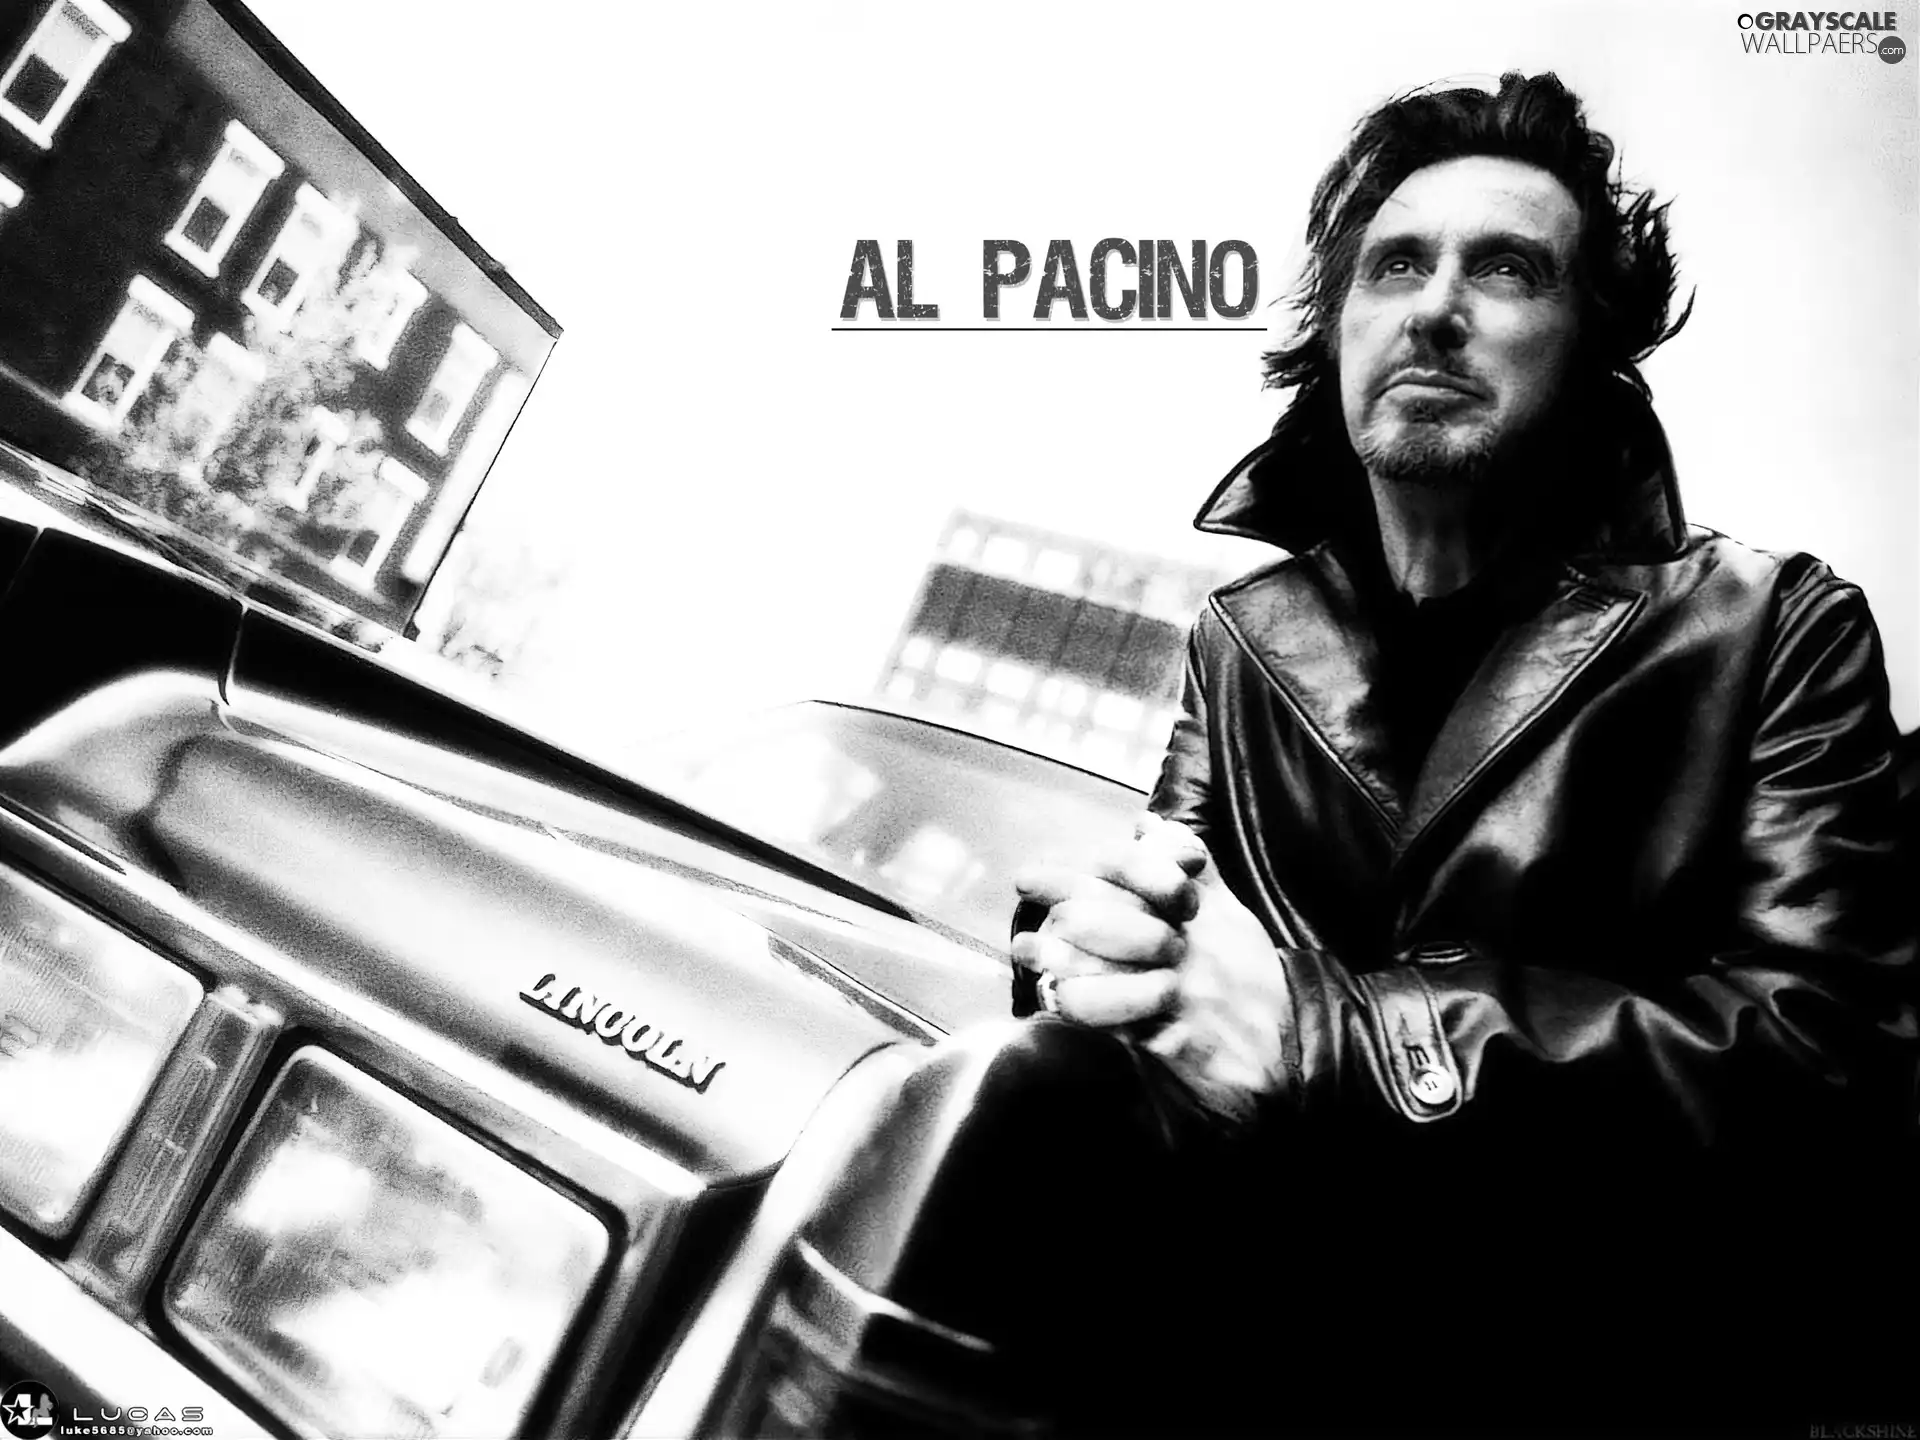 Al Pacino, Automobile, actor, skin